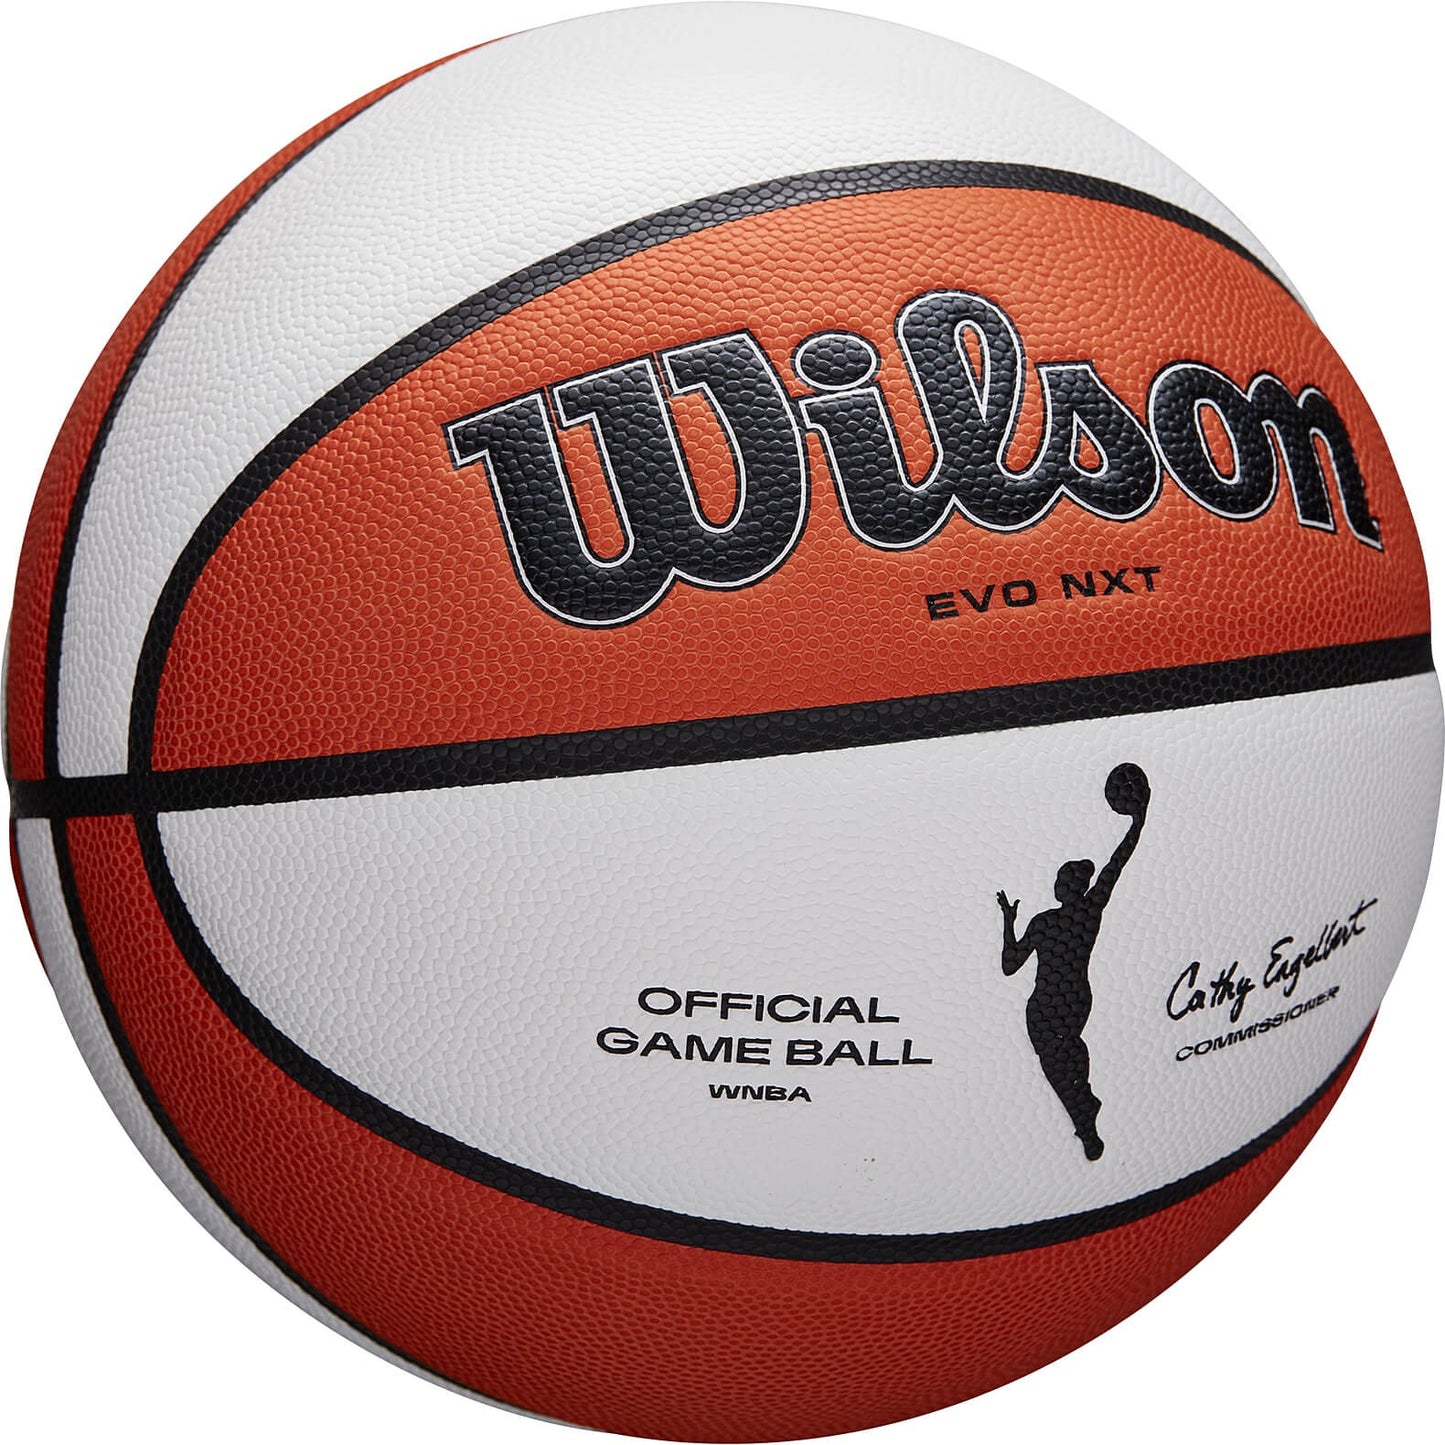 Wilson Wnba Official Game Ball Bskt (Sz. 6)